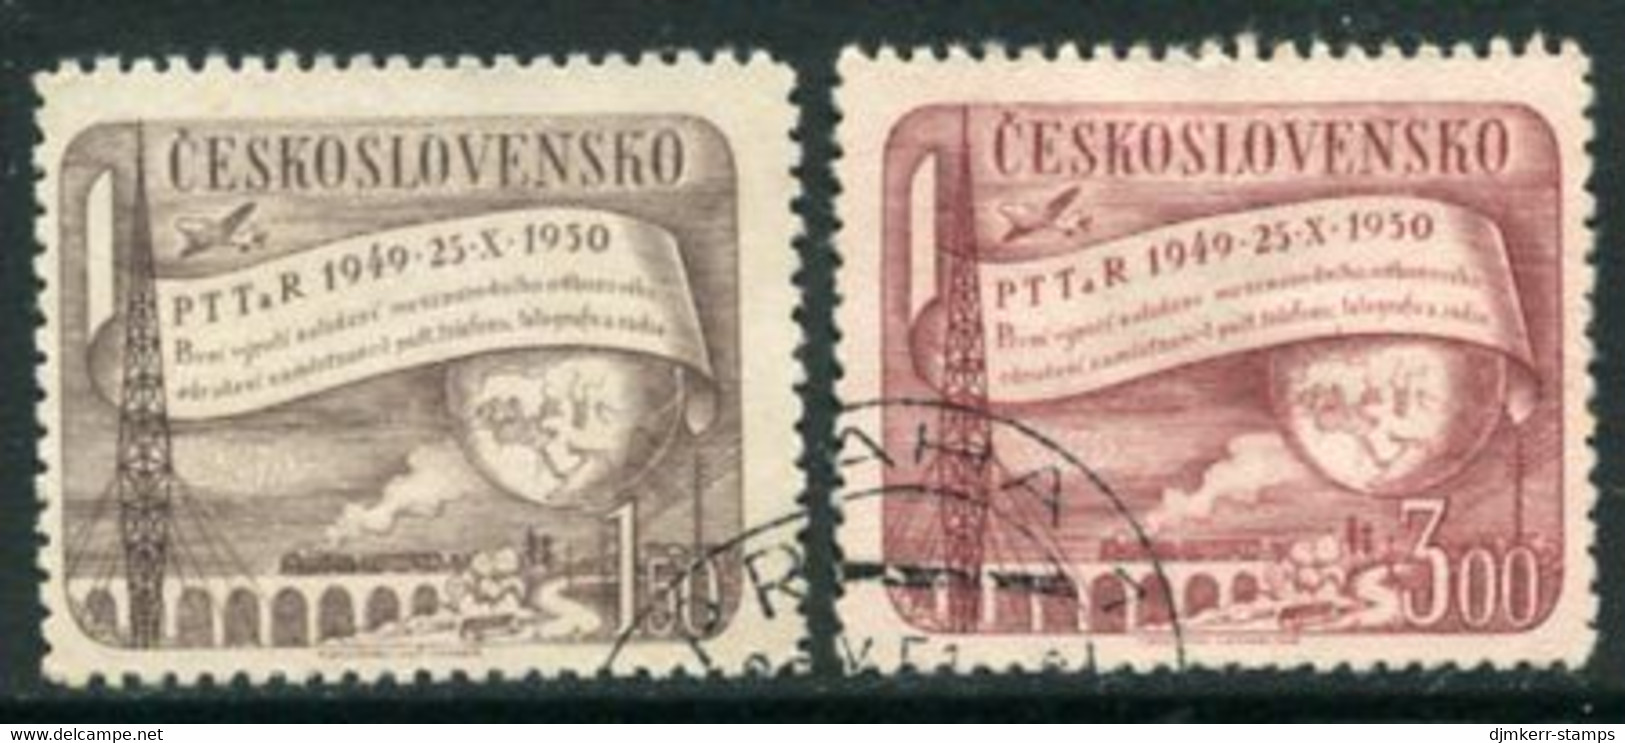 CZECHOSLOVAKIA 1950 Postal Employees Association  Used.  Michel 634-35 - Oblitérés